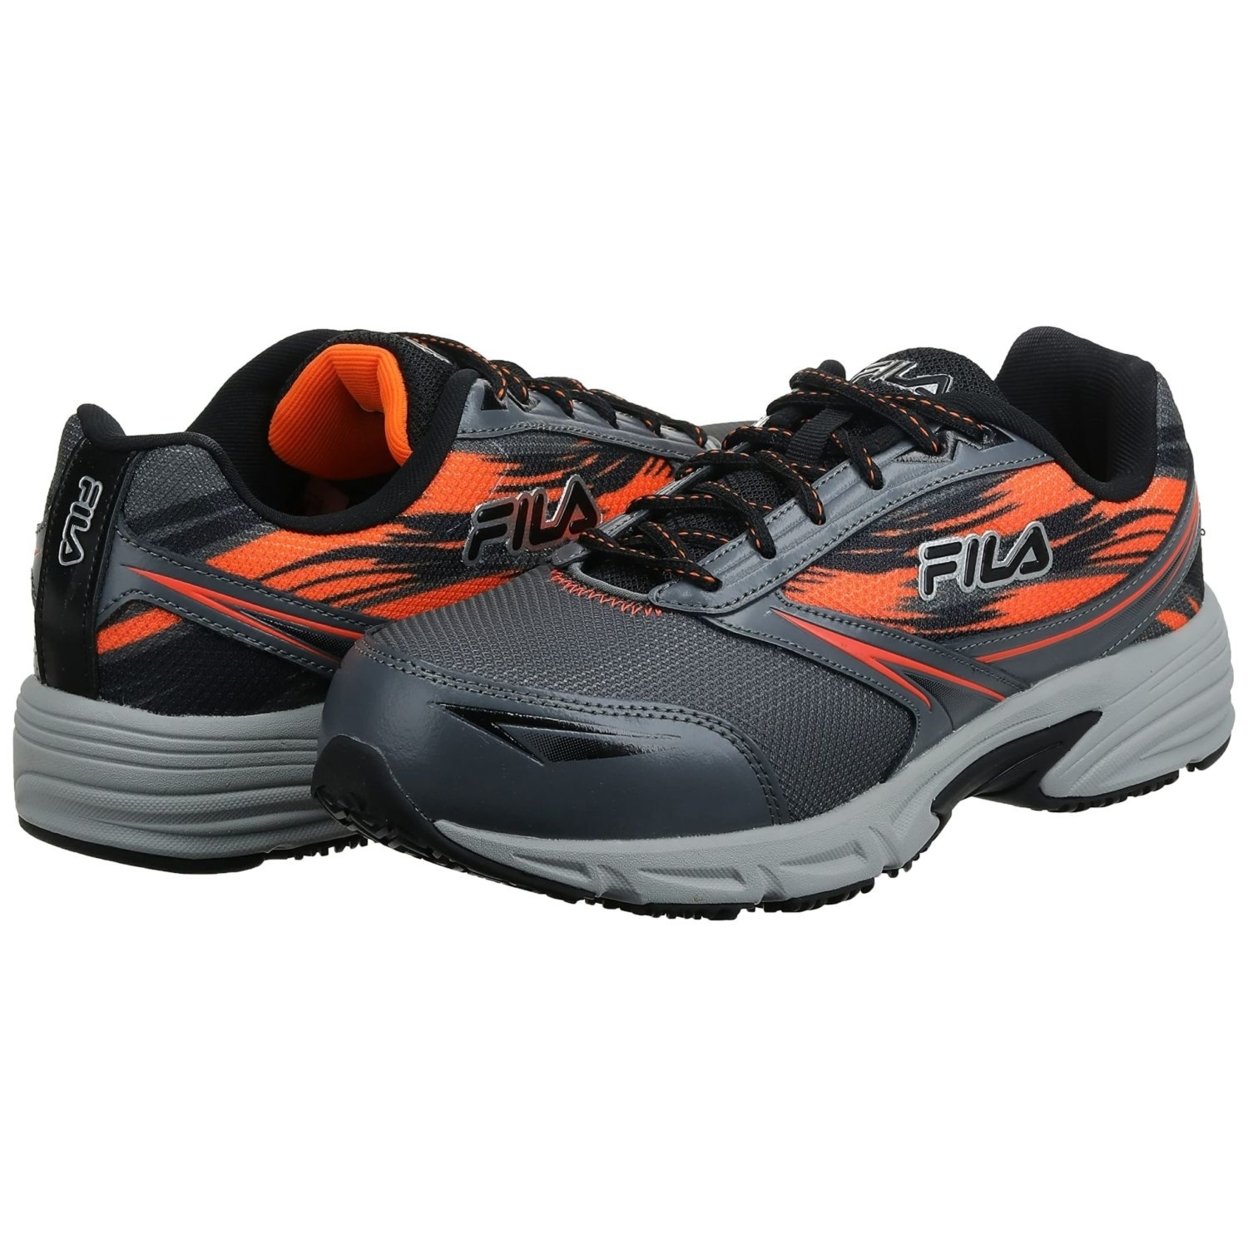 Fila Menâs Memory Meiera 2 Slip Resistant And Composite Toe Work Shoe CSRK/BLK/VORN - Castlerock/Black/Vibrant Orange, 13